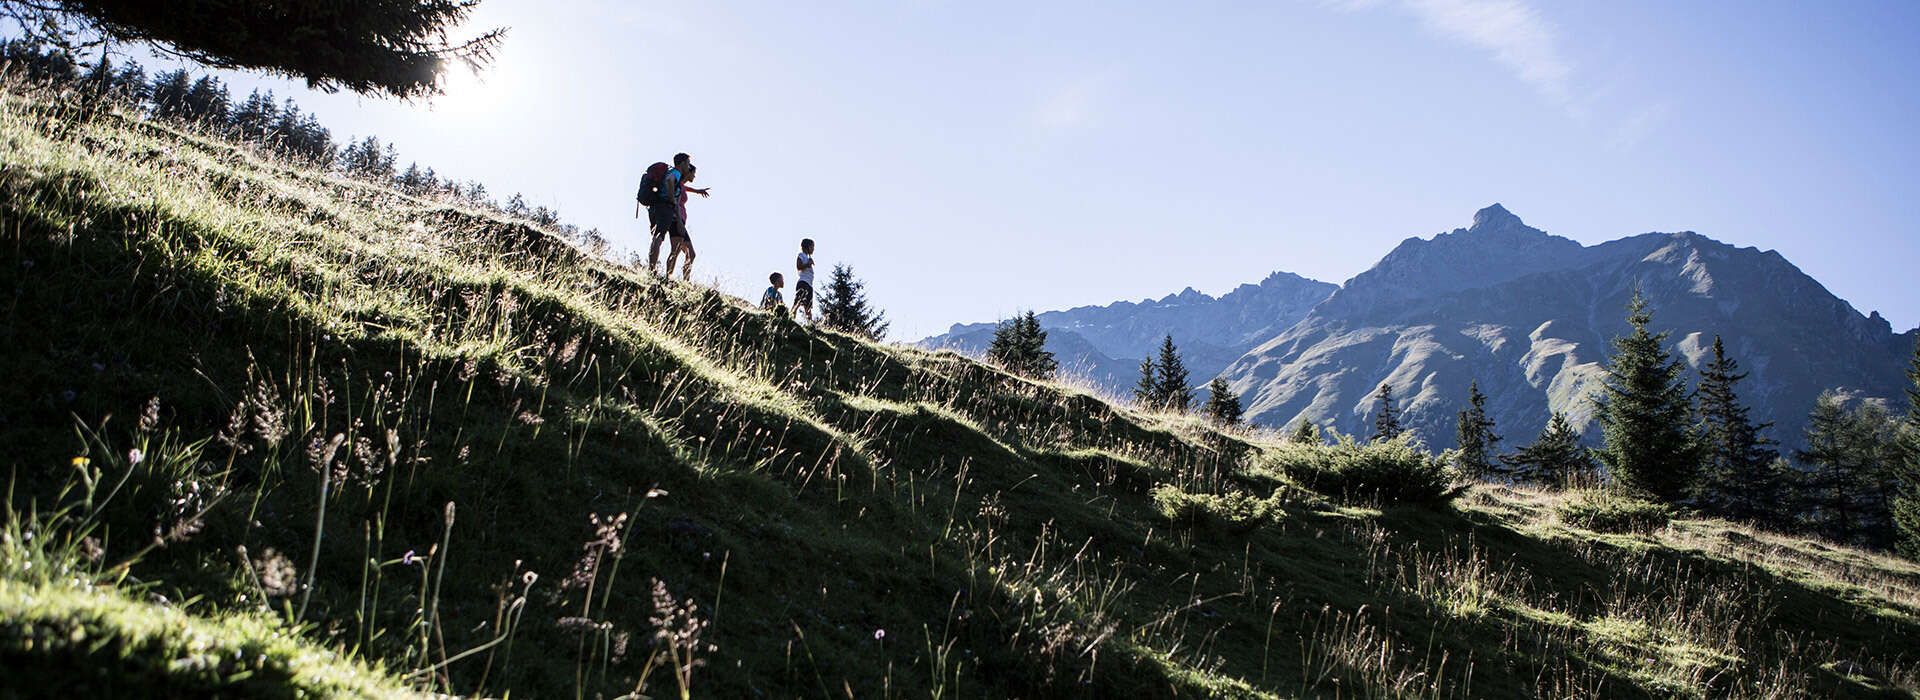 Wandern mit der Familie auf der Selles in Tirol